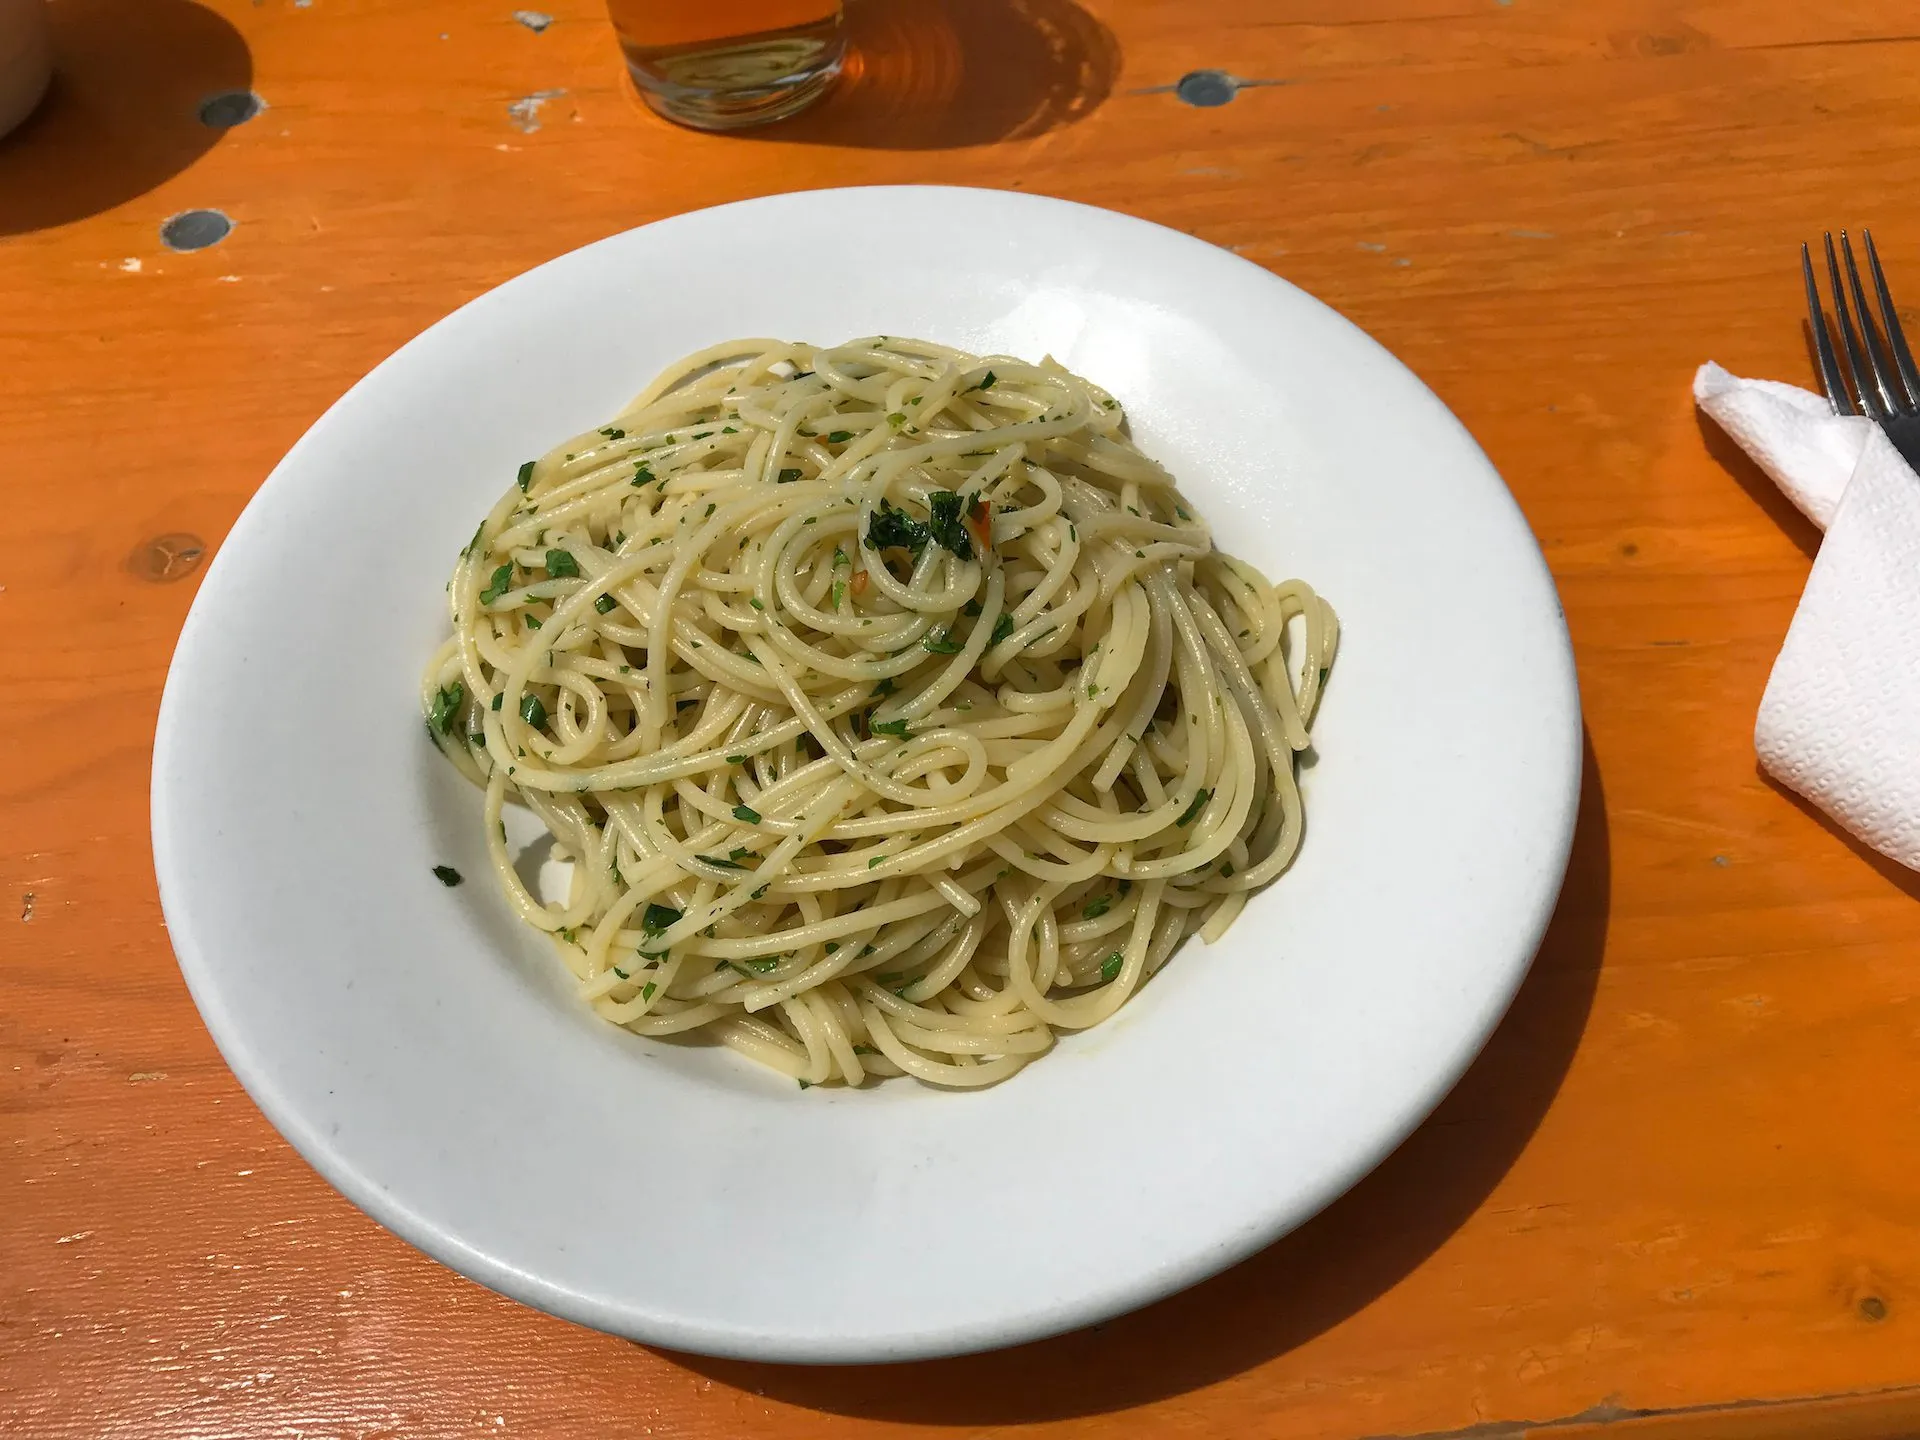 Spaghetti aglio olio und Peperoncino